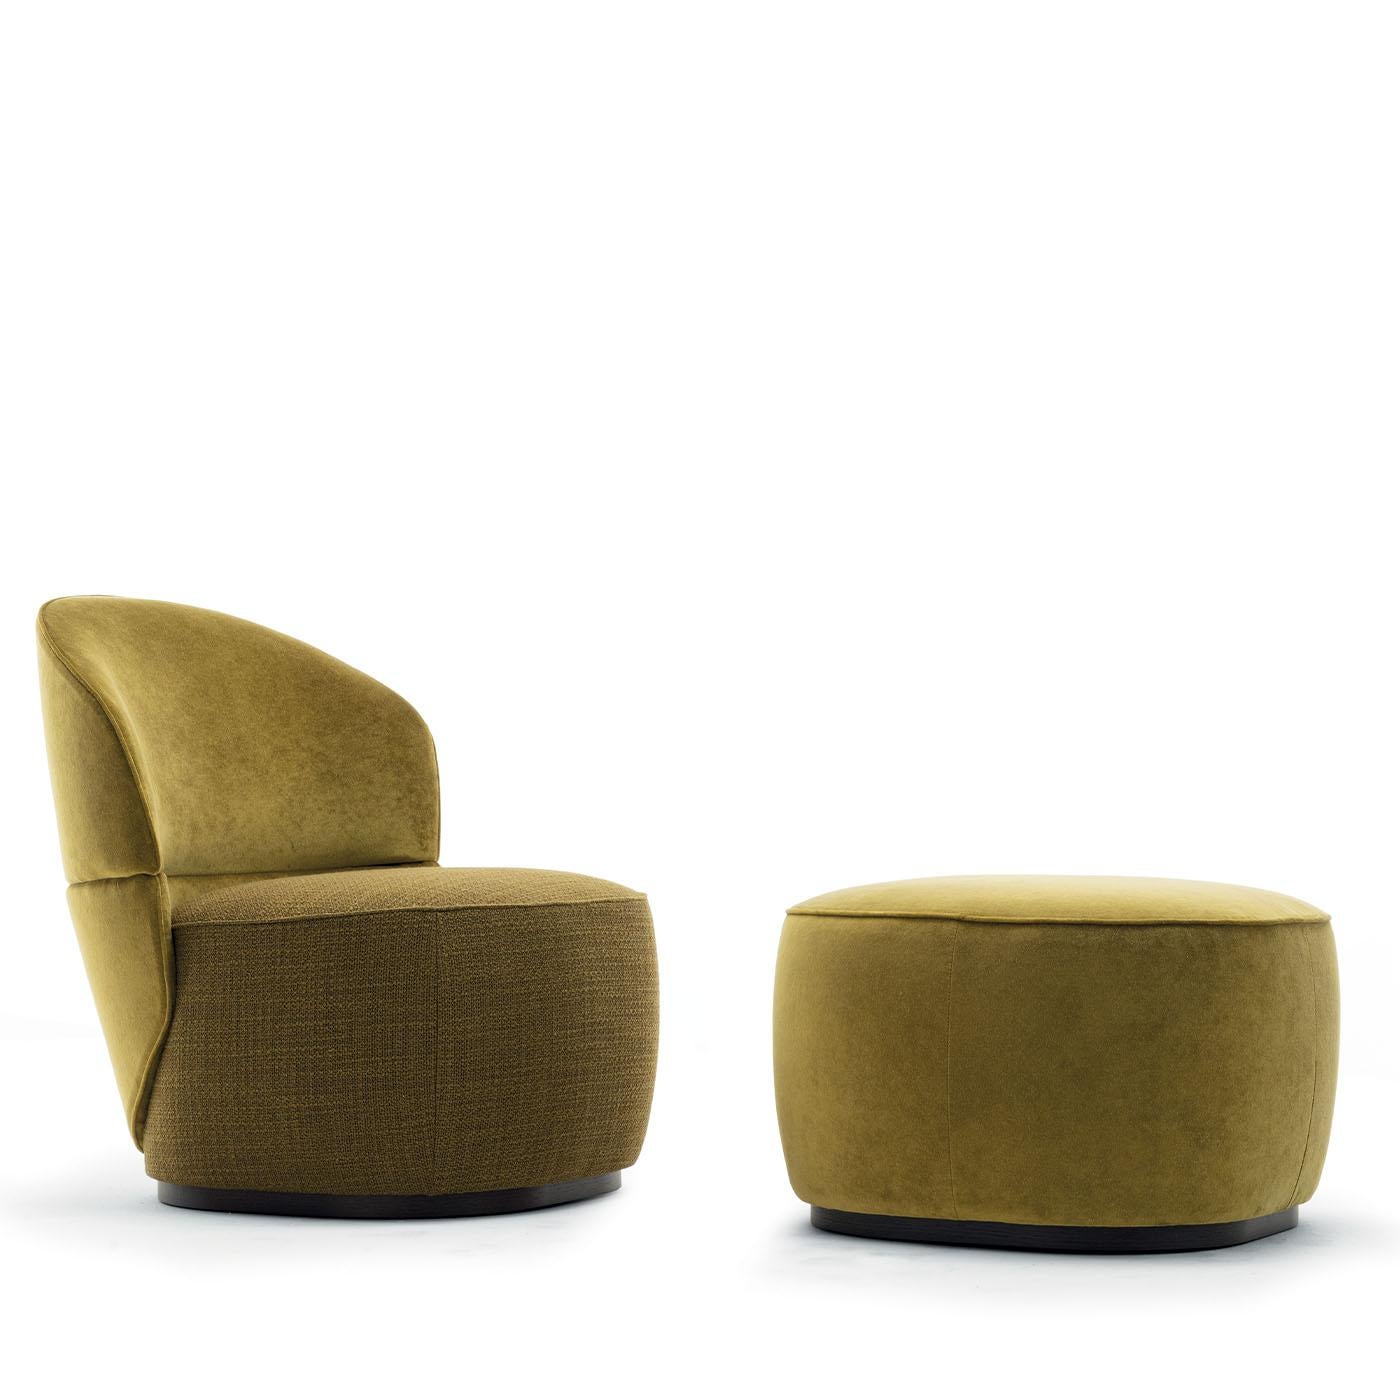 Des courbes enveloppantes dessinent la silhouette épurée de ce fauteuil, qui s'intègre avec vivacité dans les décors modernes aux tons neutres. Scellés par un revêtement en tissu EX proposé dans une teinte vibrante vert acide, ses volumes assurent